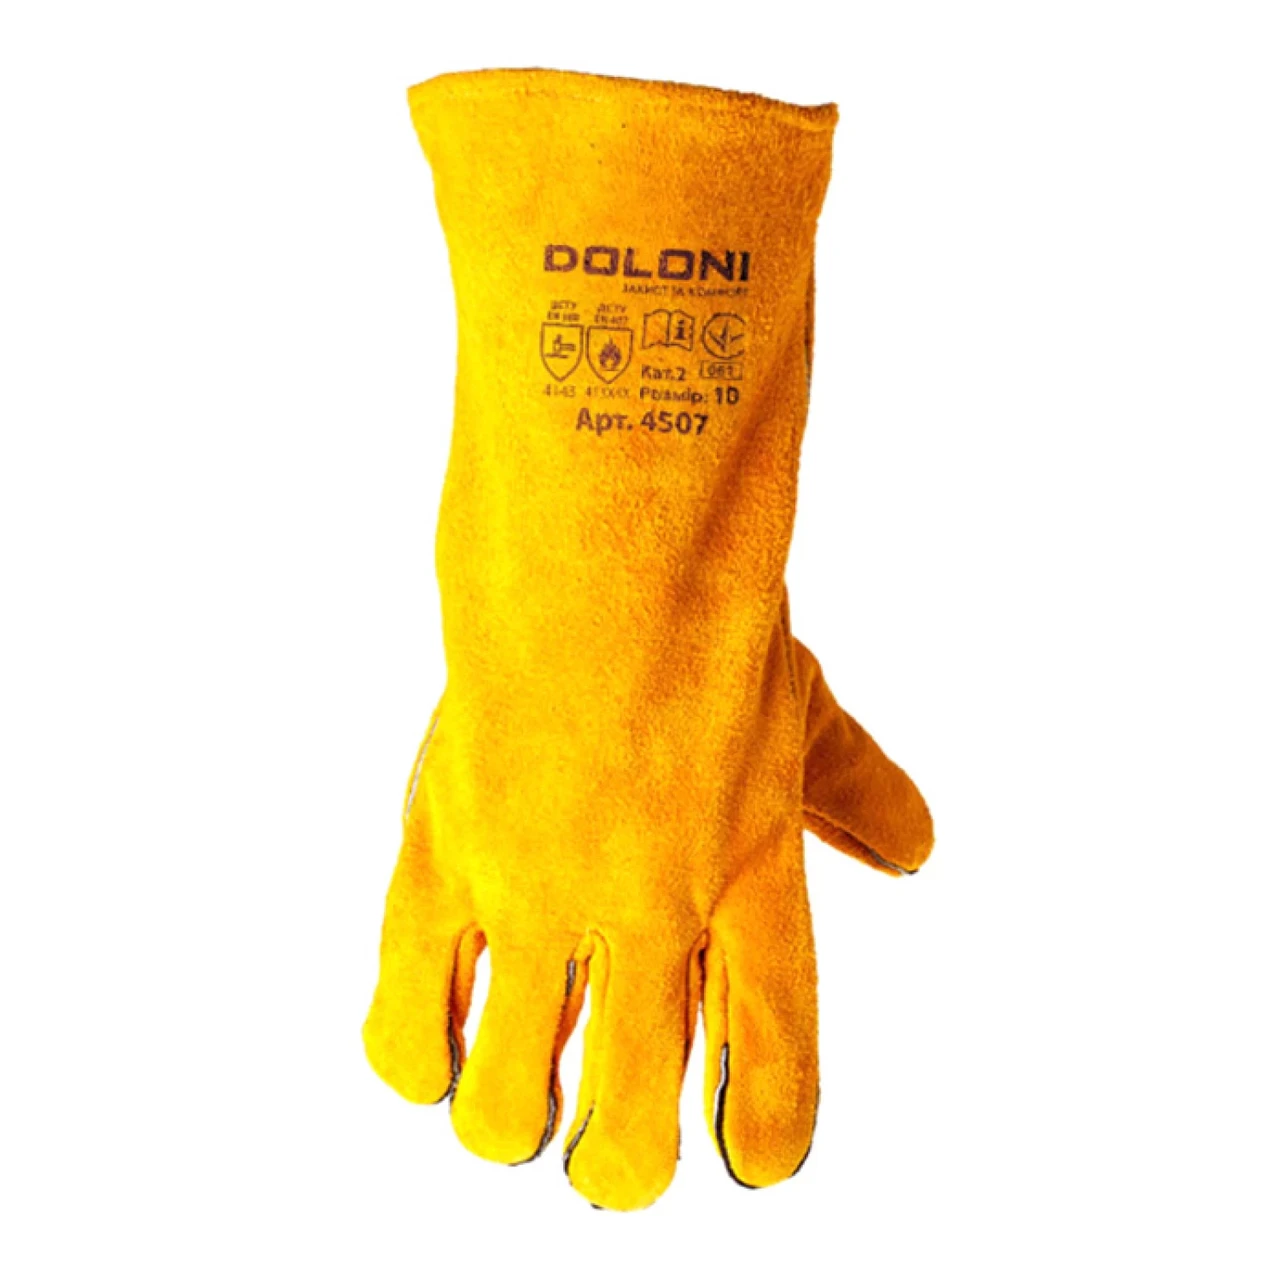 Рукавички Doloni D-Flame зварювальні спилок з підкладкою жовті розмір 10 (4507)